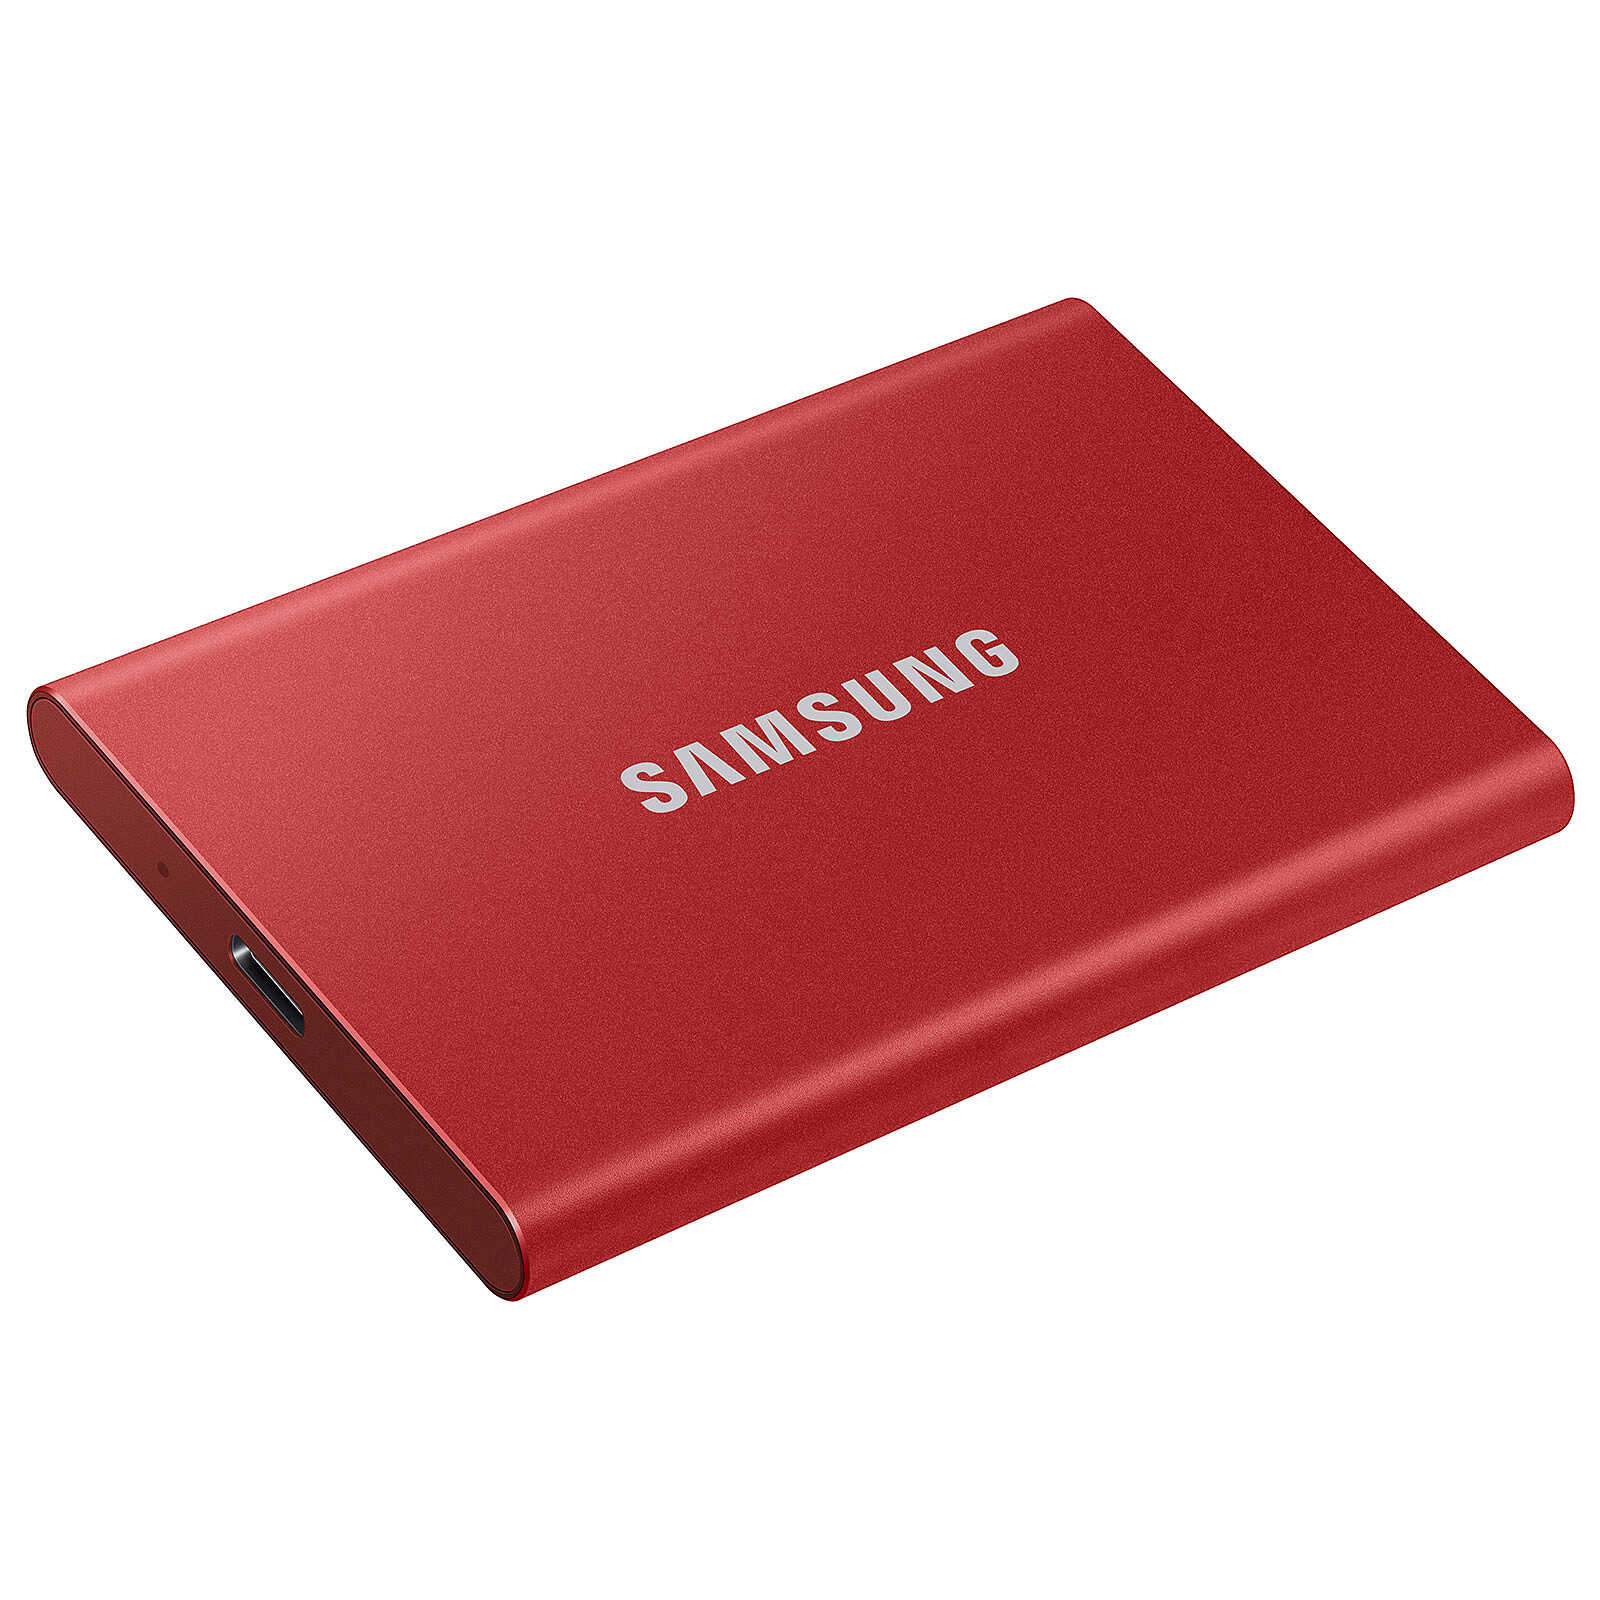 Samsung SSD portatile T7 1Tb Rosso